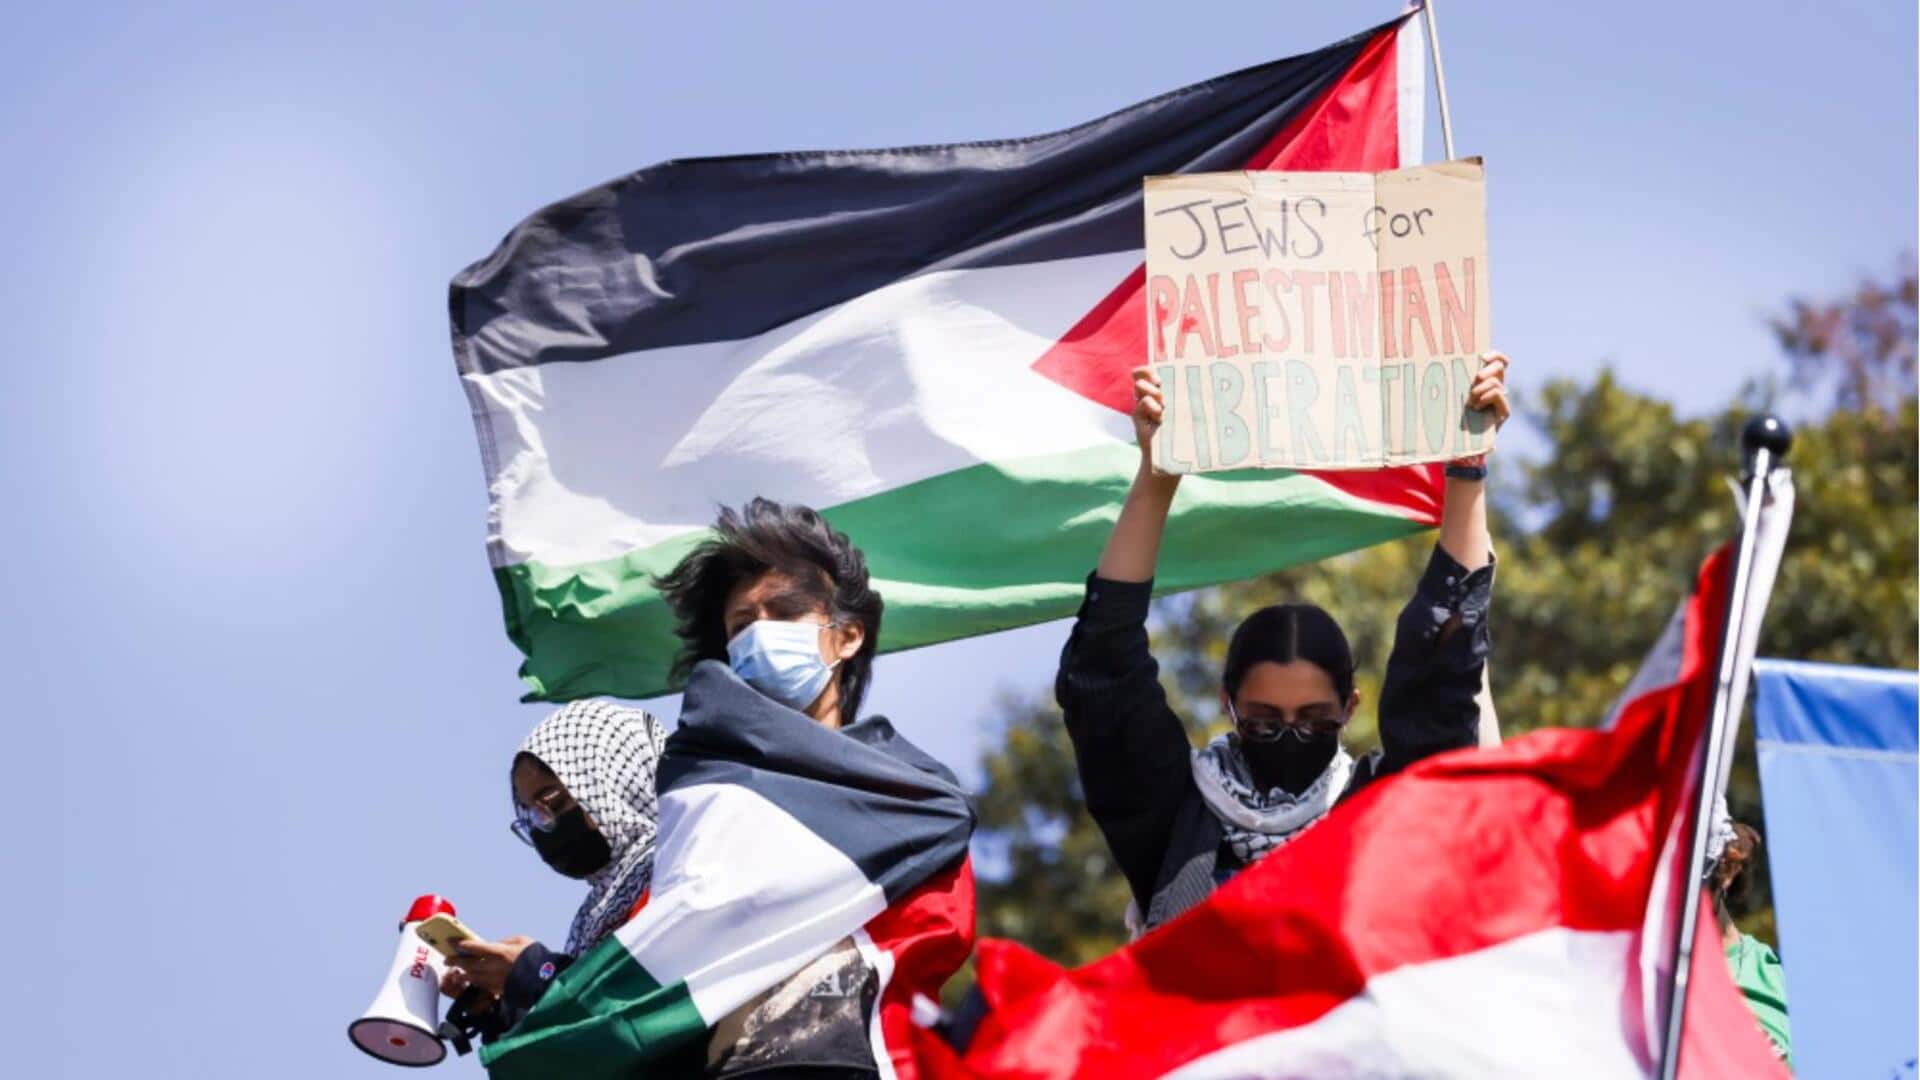 इजरायल-हमास युद्ध: अमेरिका में हिंसक हुआ छात्रों का प्रदर्शन, कोलंबिया ने इजरायल से तोड़े राजनयिक संबंध